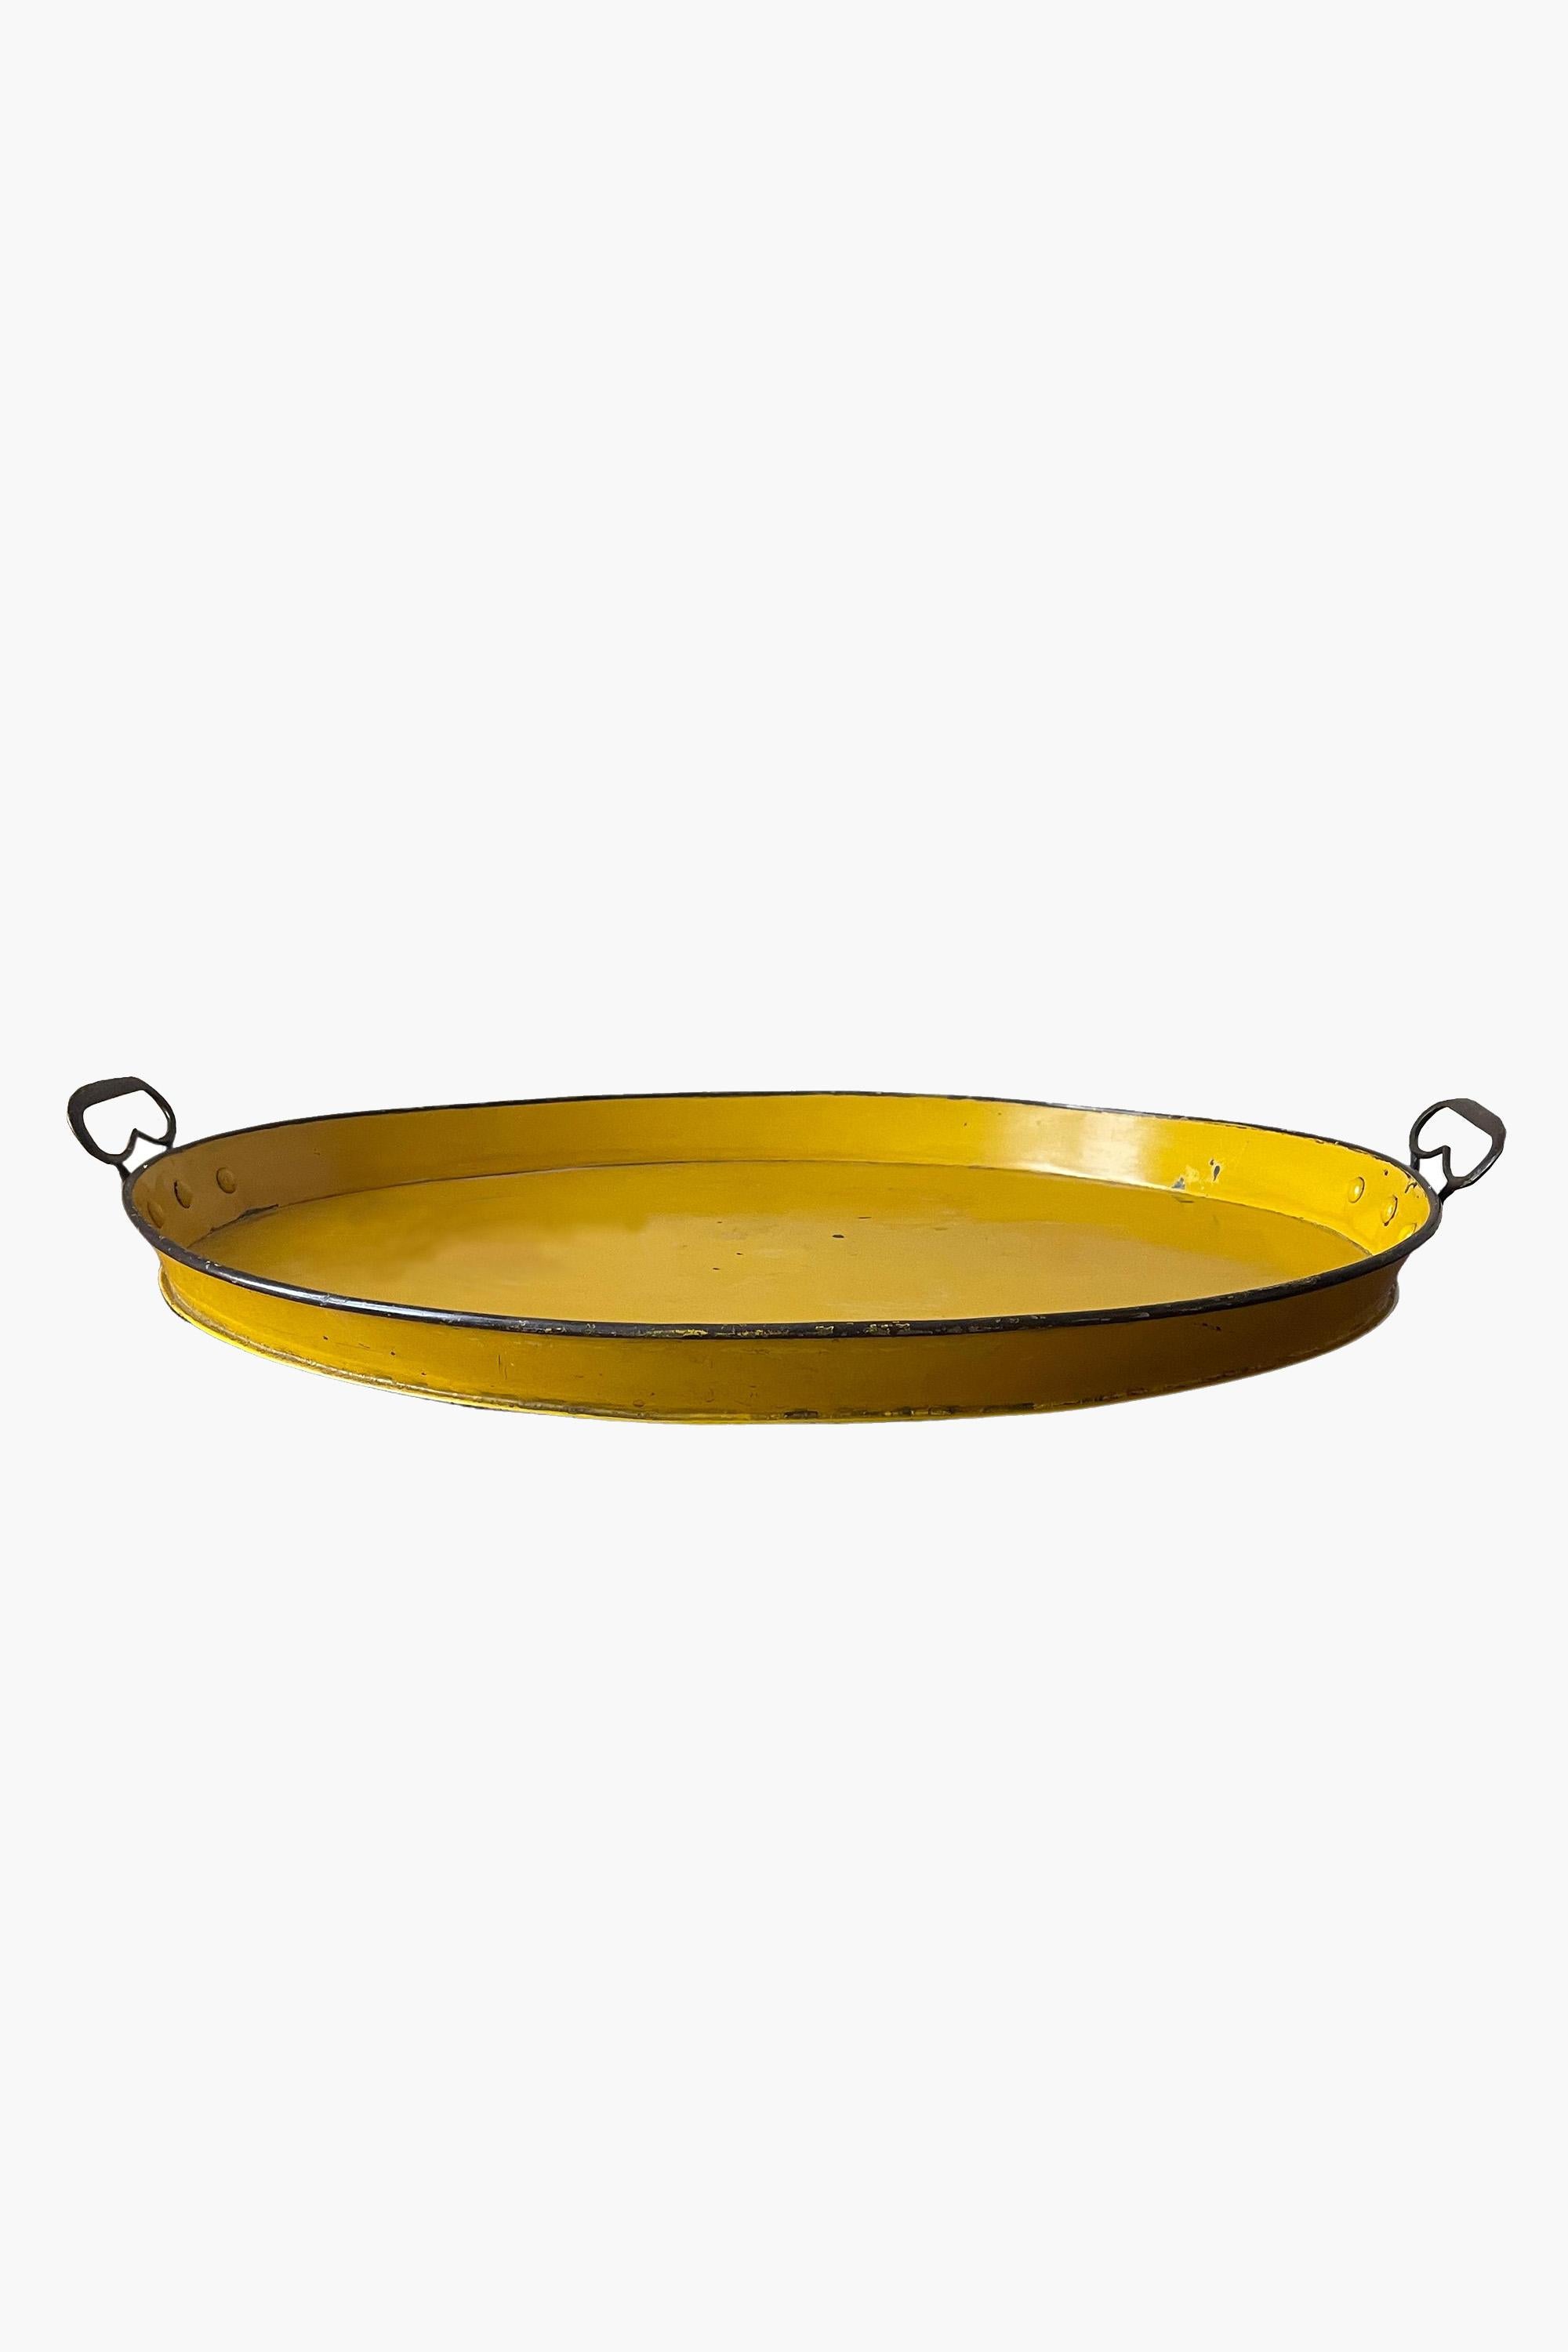 Großes schwedisches Toleware-Tablett aus dem 19.

Gelb bemaltes ovales Zinntablett in schönem Originalzustand. Unglaublich nützlich und großzügig dimensioniert.

Abmessungen: B 76cm